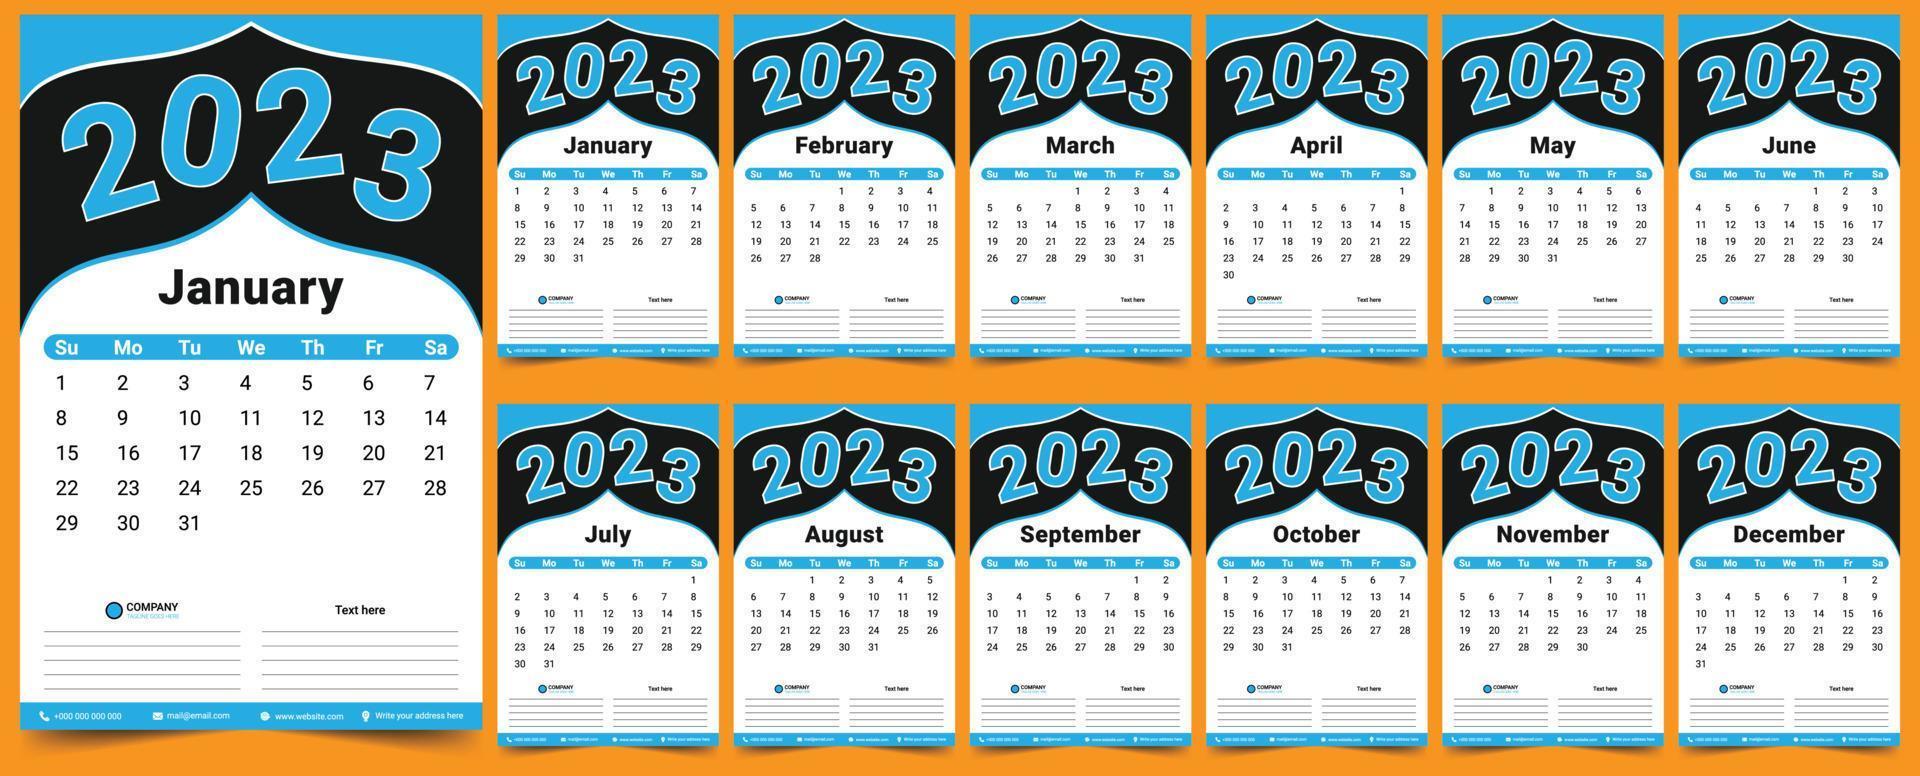 calendar for 2023, 2023 calendar, 2023 poster calendar vector